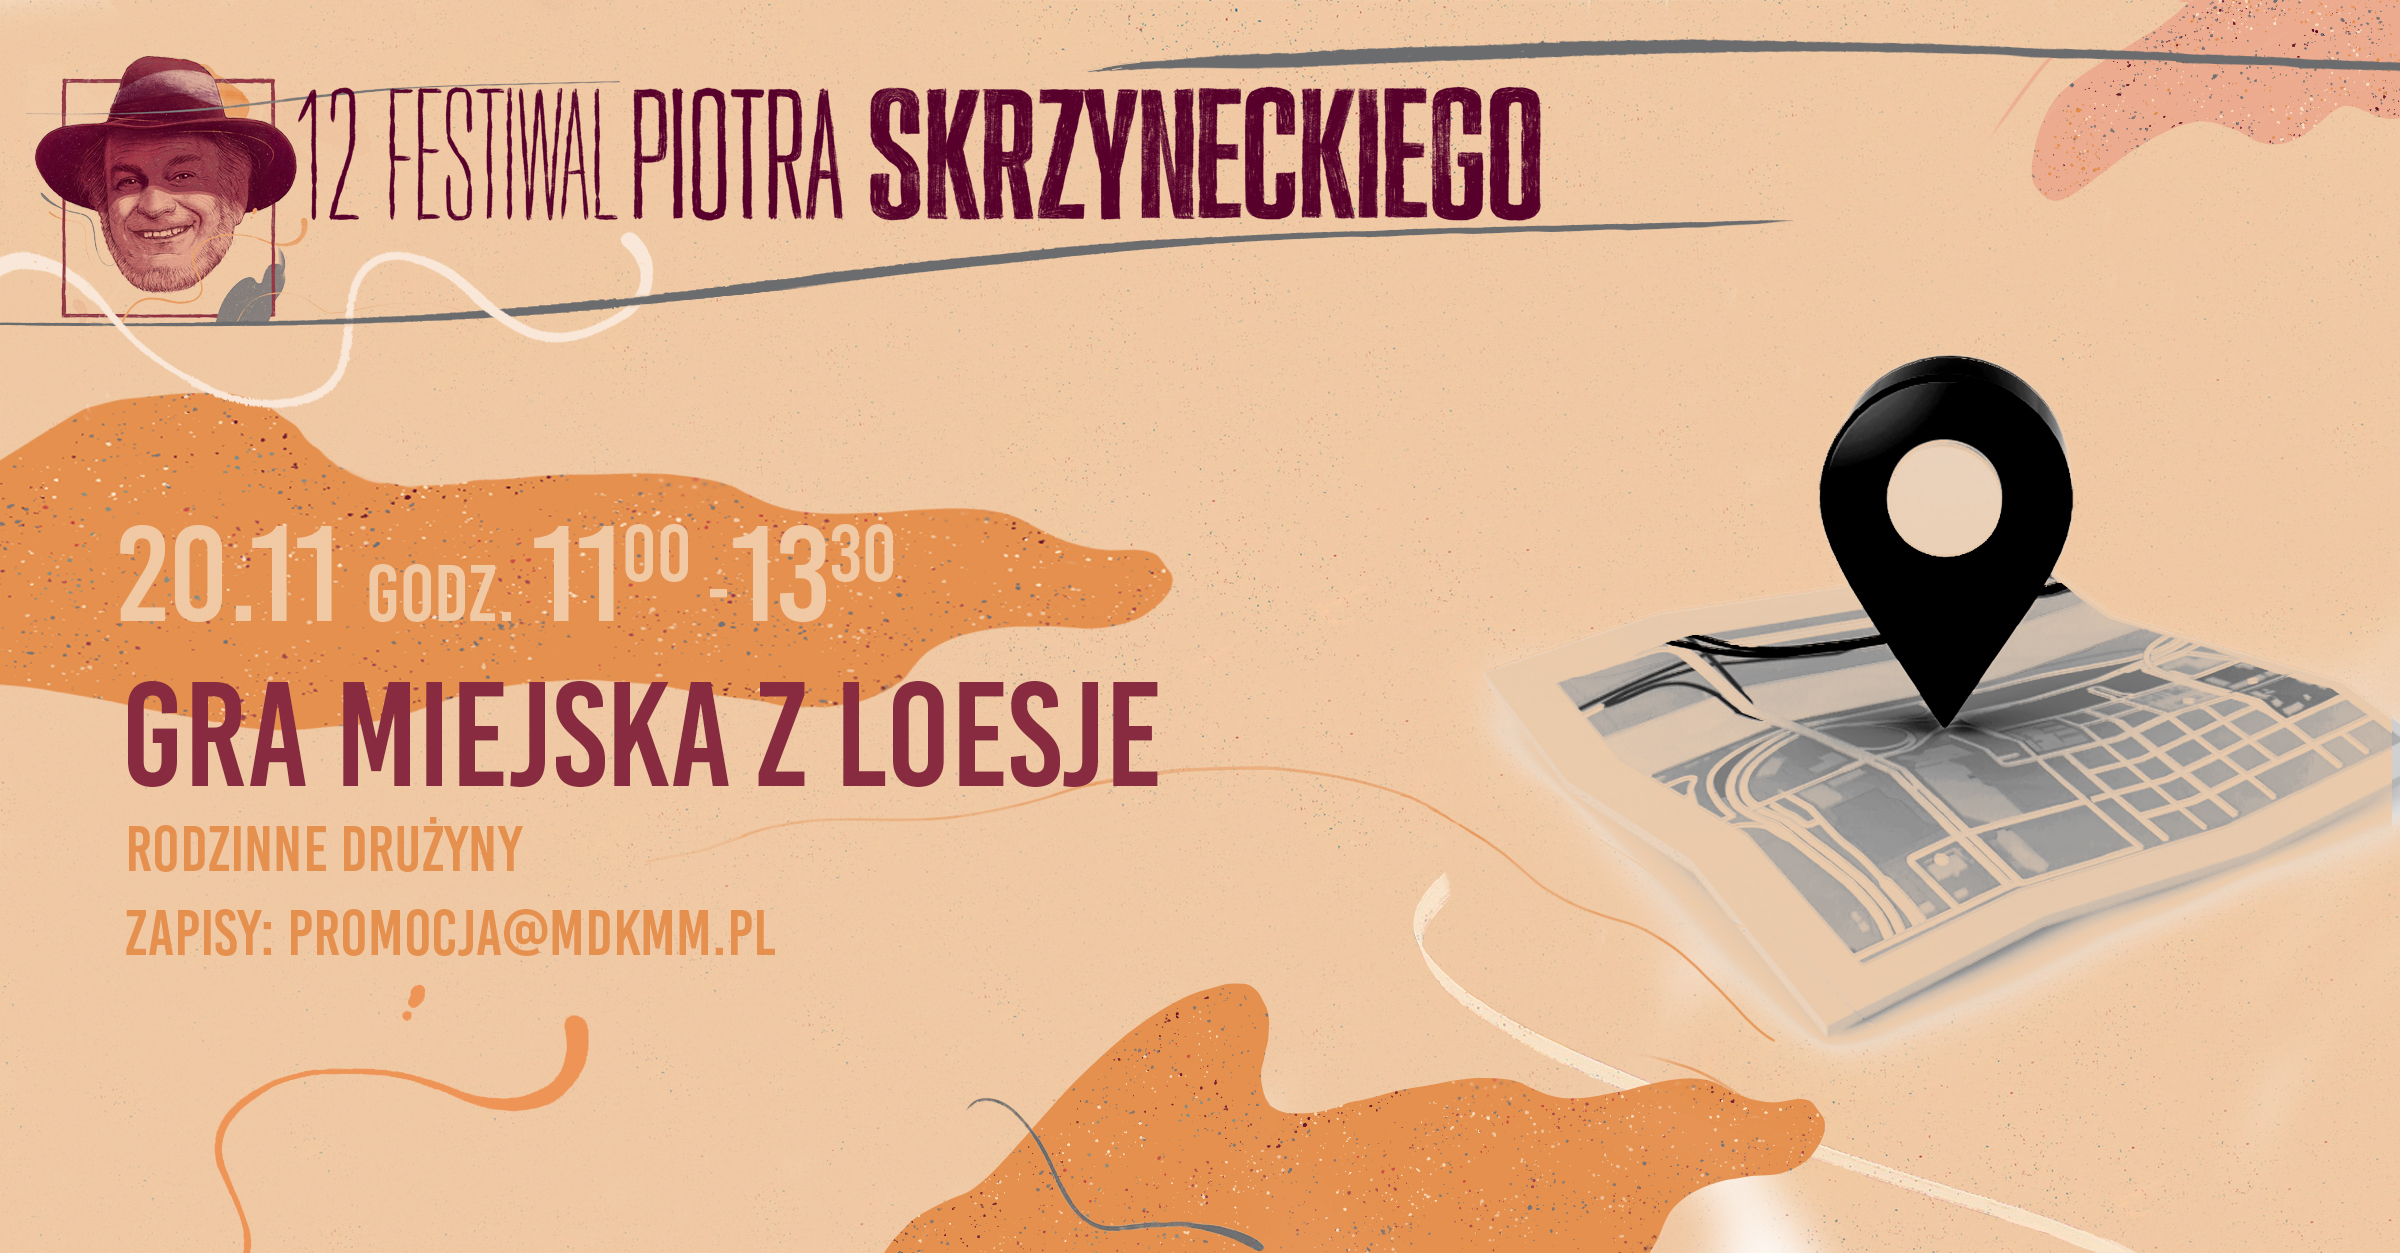 Gra miejska z Loesje | drużyny rodzinne | Festiwal Piotra Skrzyneckiego